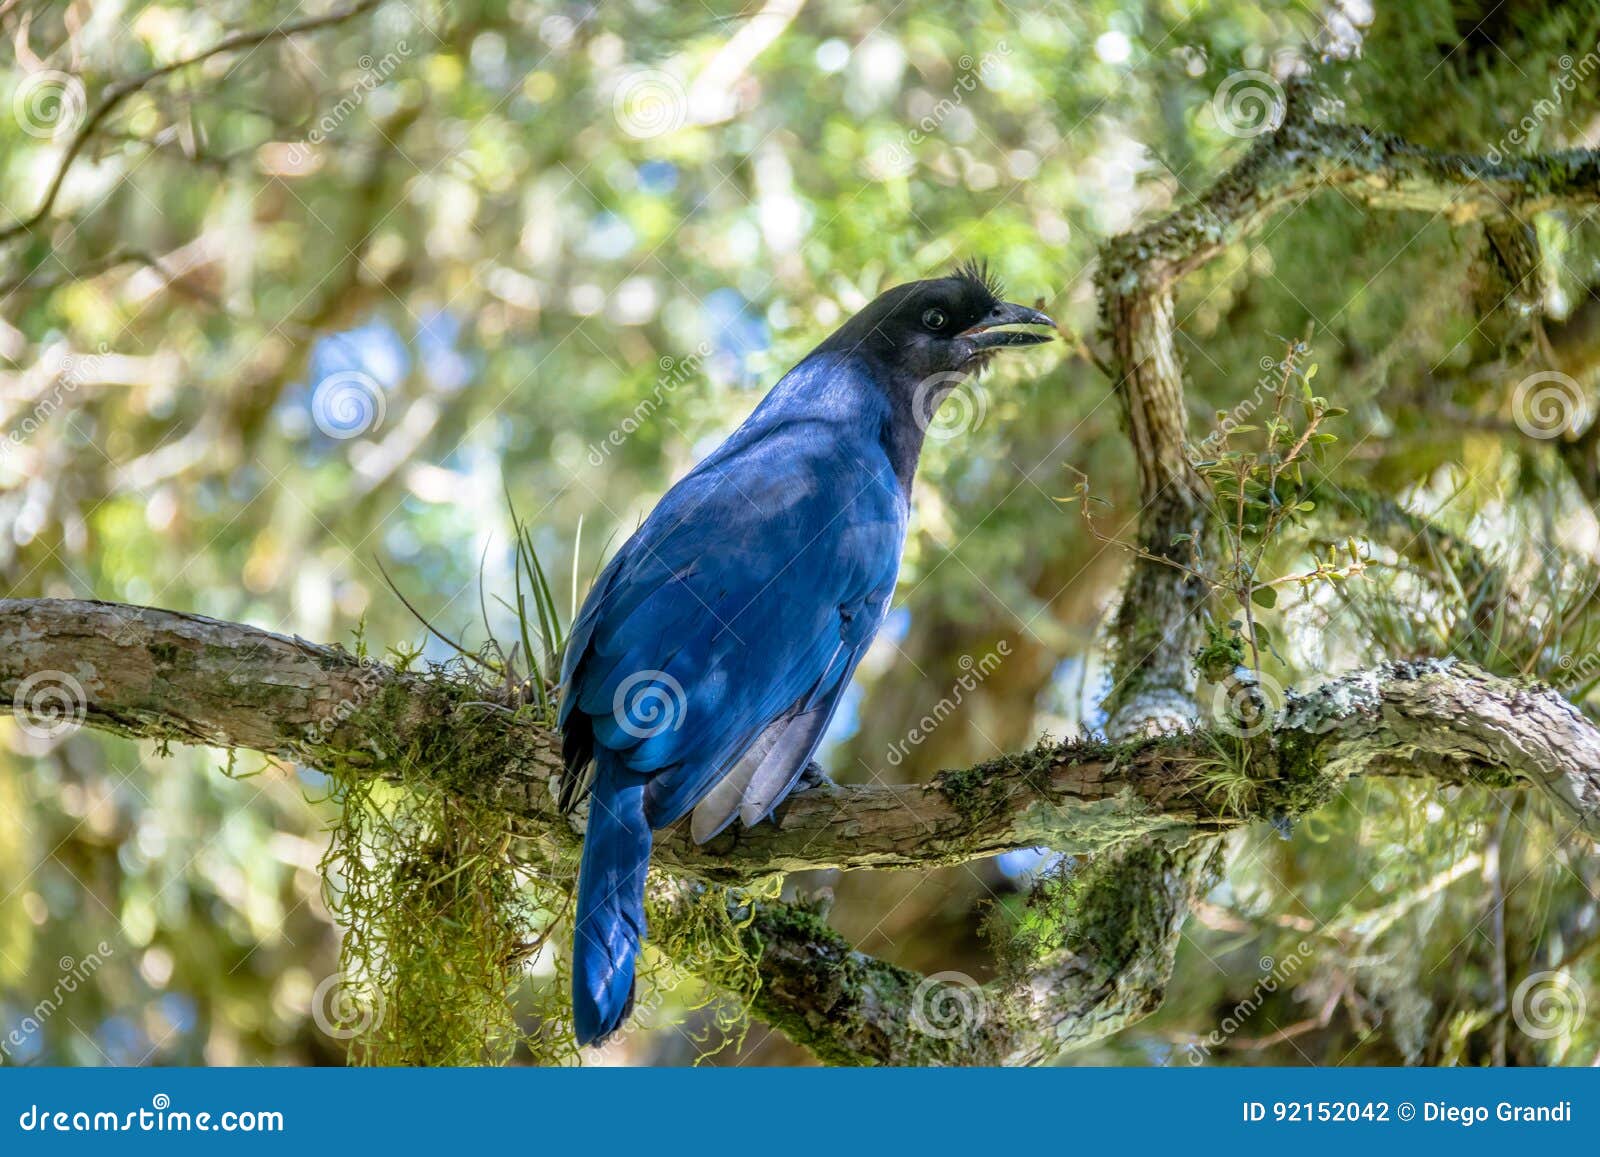 azure jay or gralha azul bird in itaimbezinho canyon at aparados da serra national park - cambara do sul, rio grande do sul, brazi